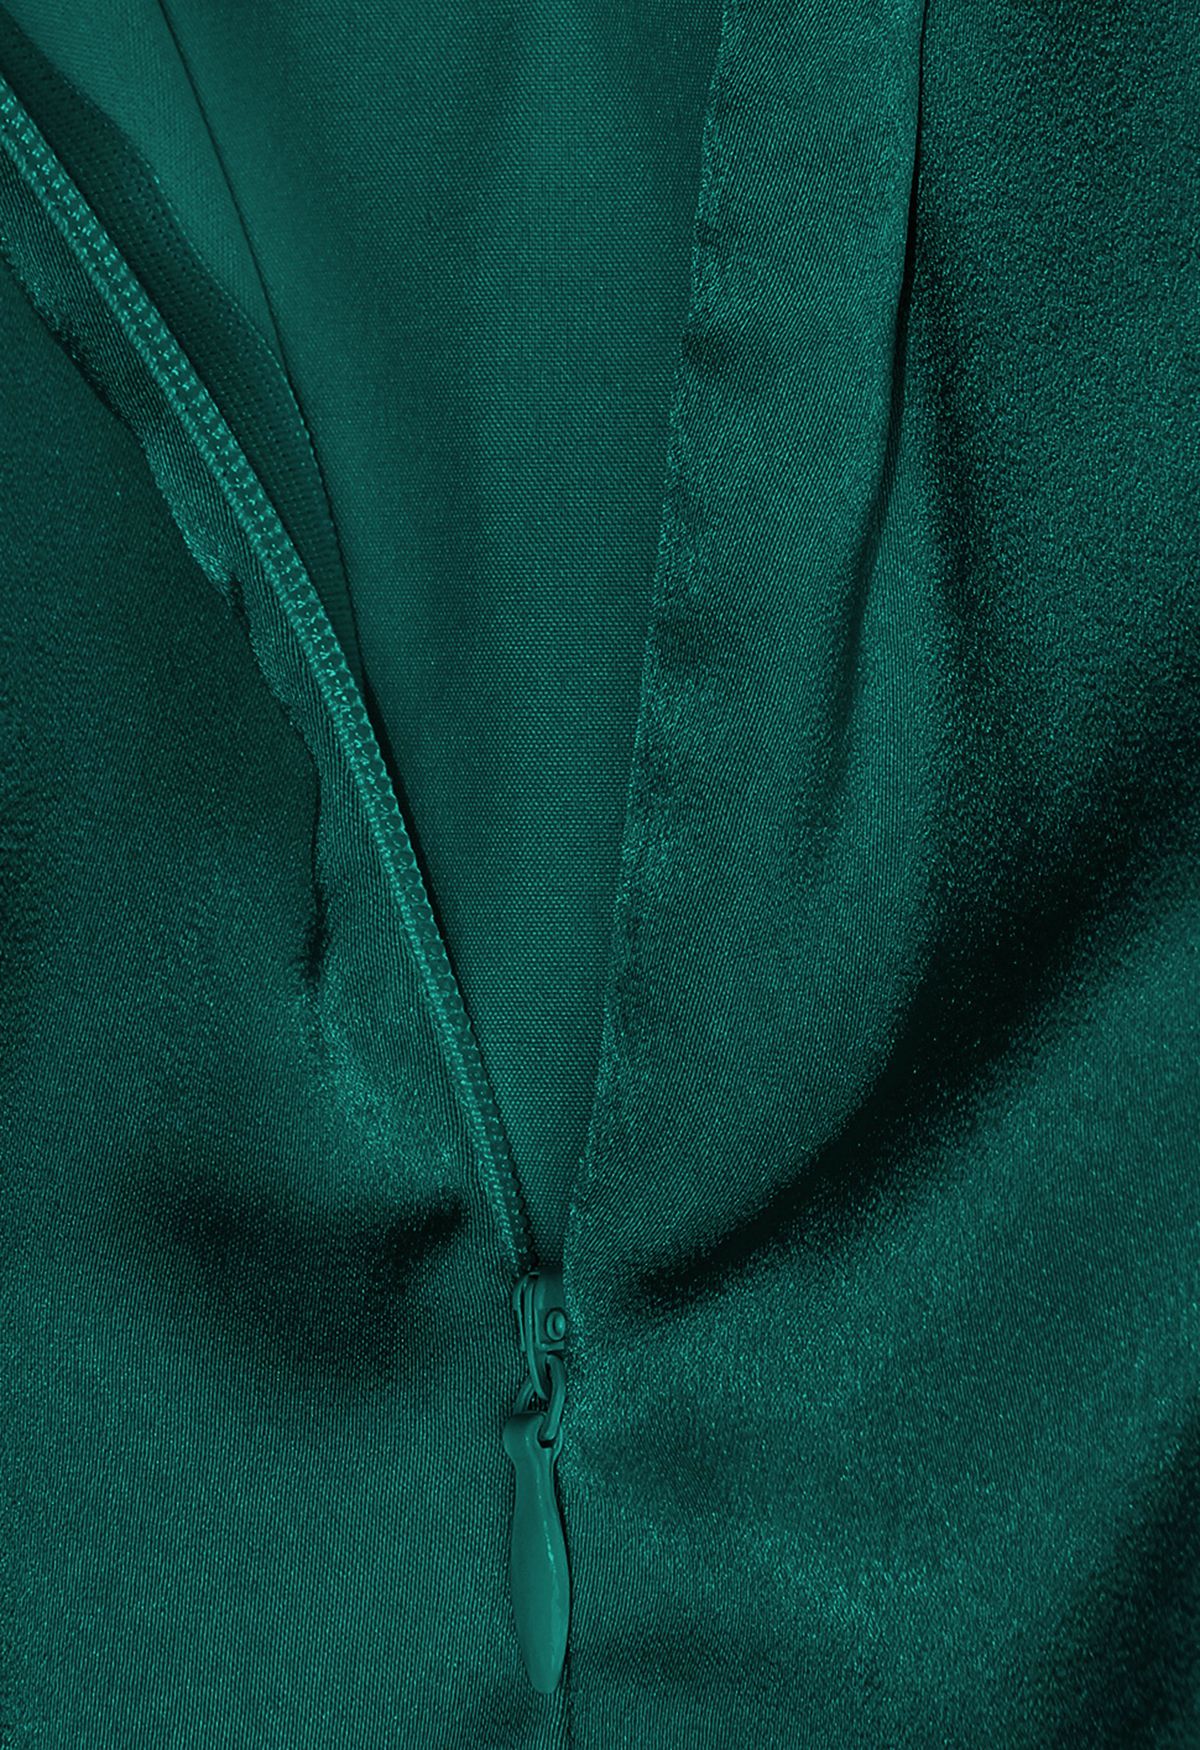 Robe asymétrique sans manches à encolure froncée en vert foncé